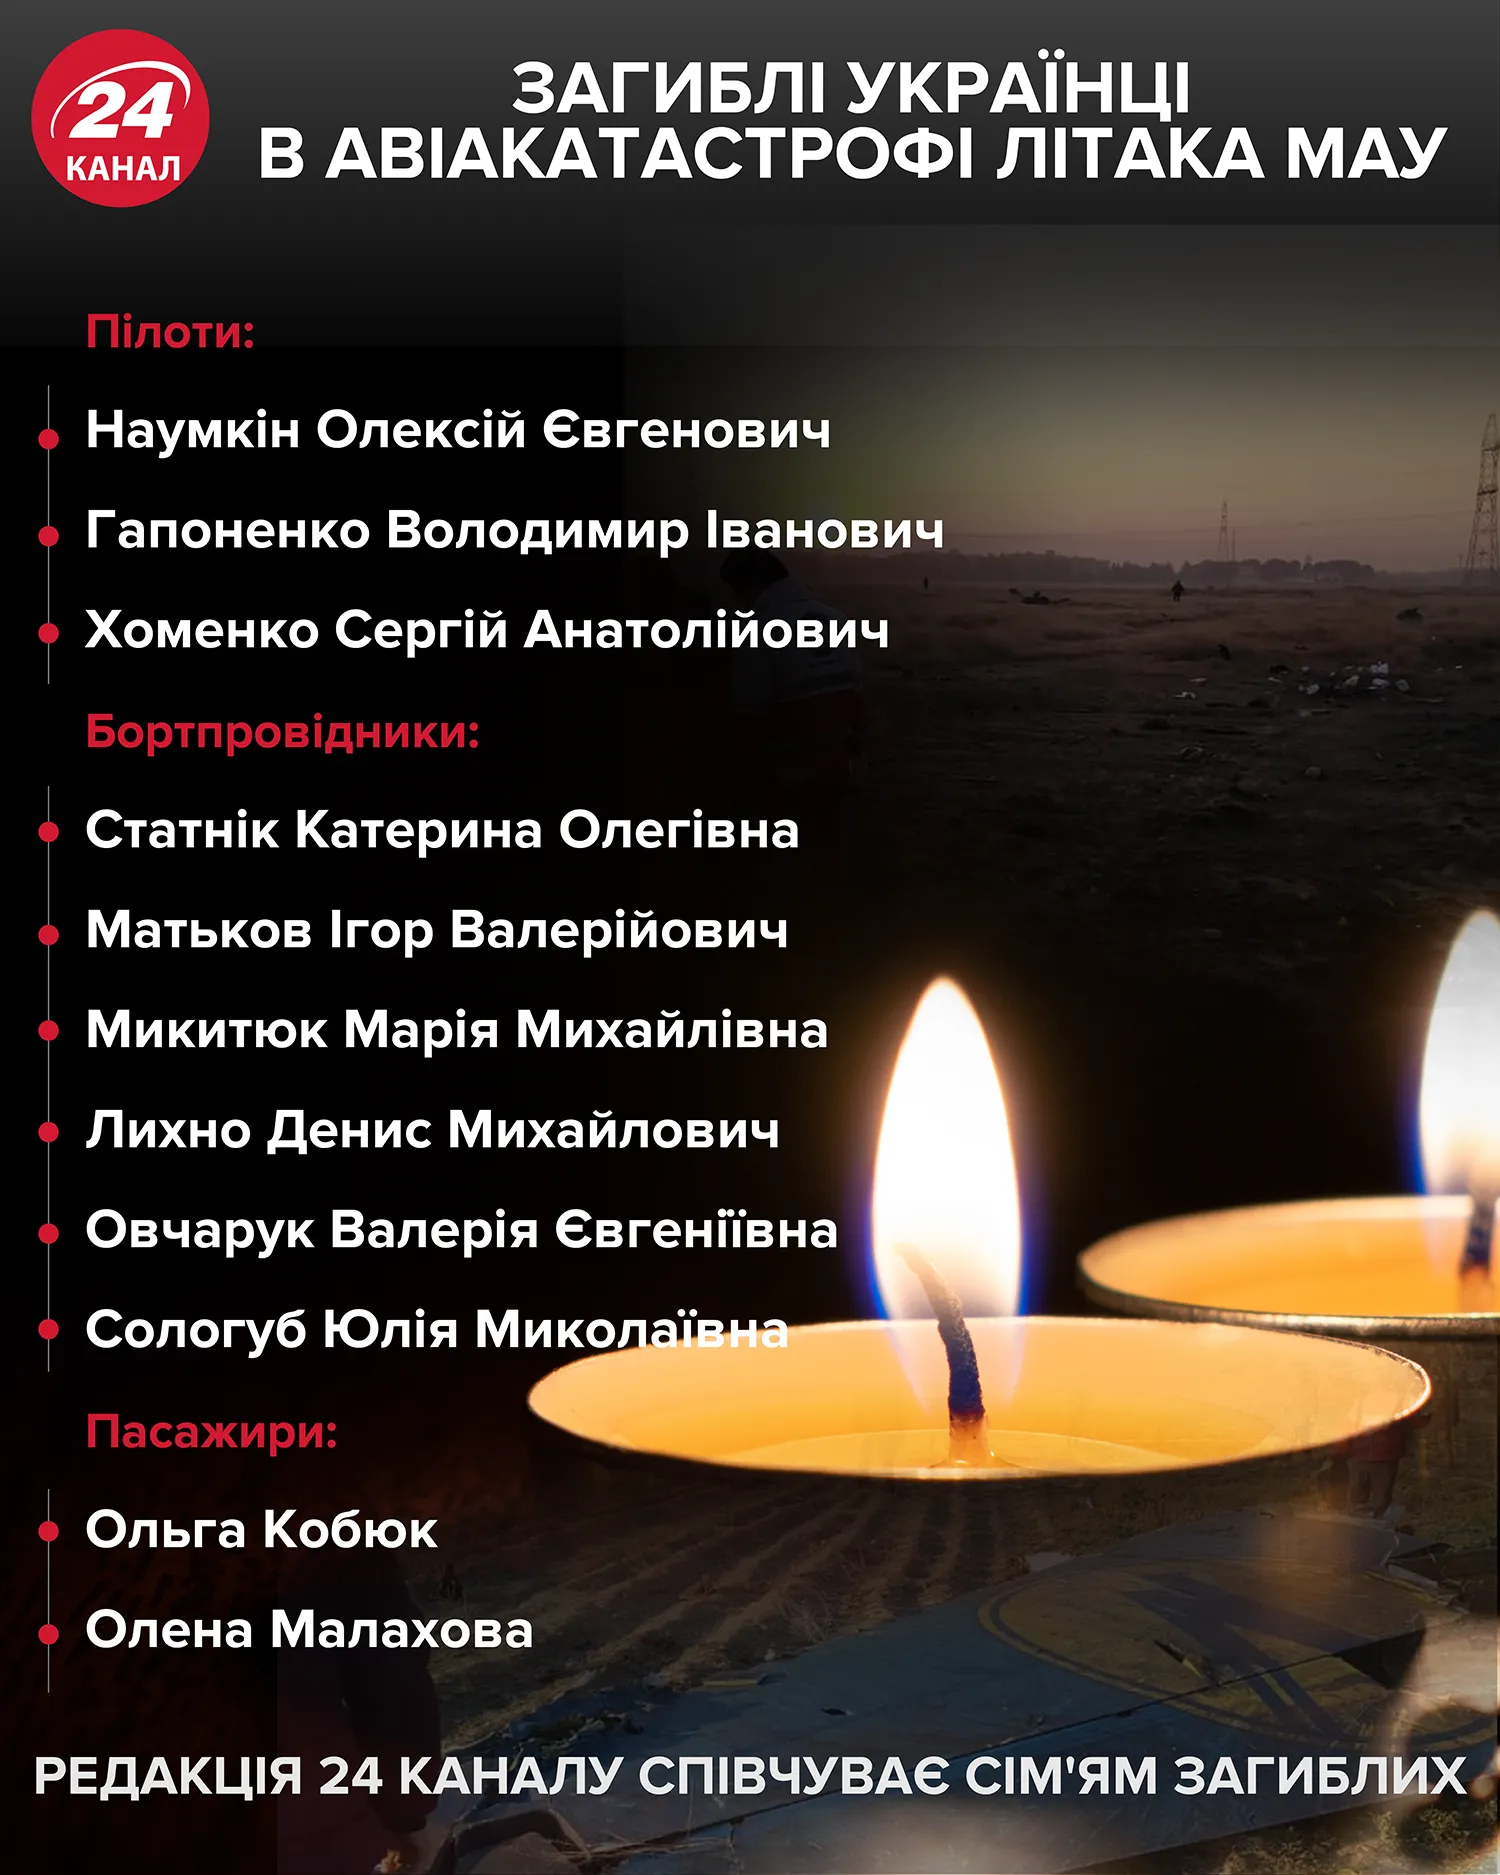 хто з українців загинув у катастрофі літака мау в ірані